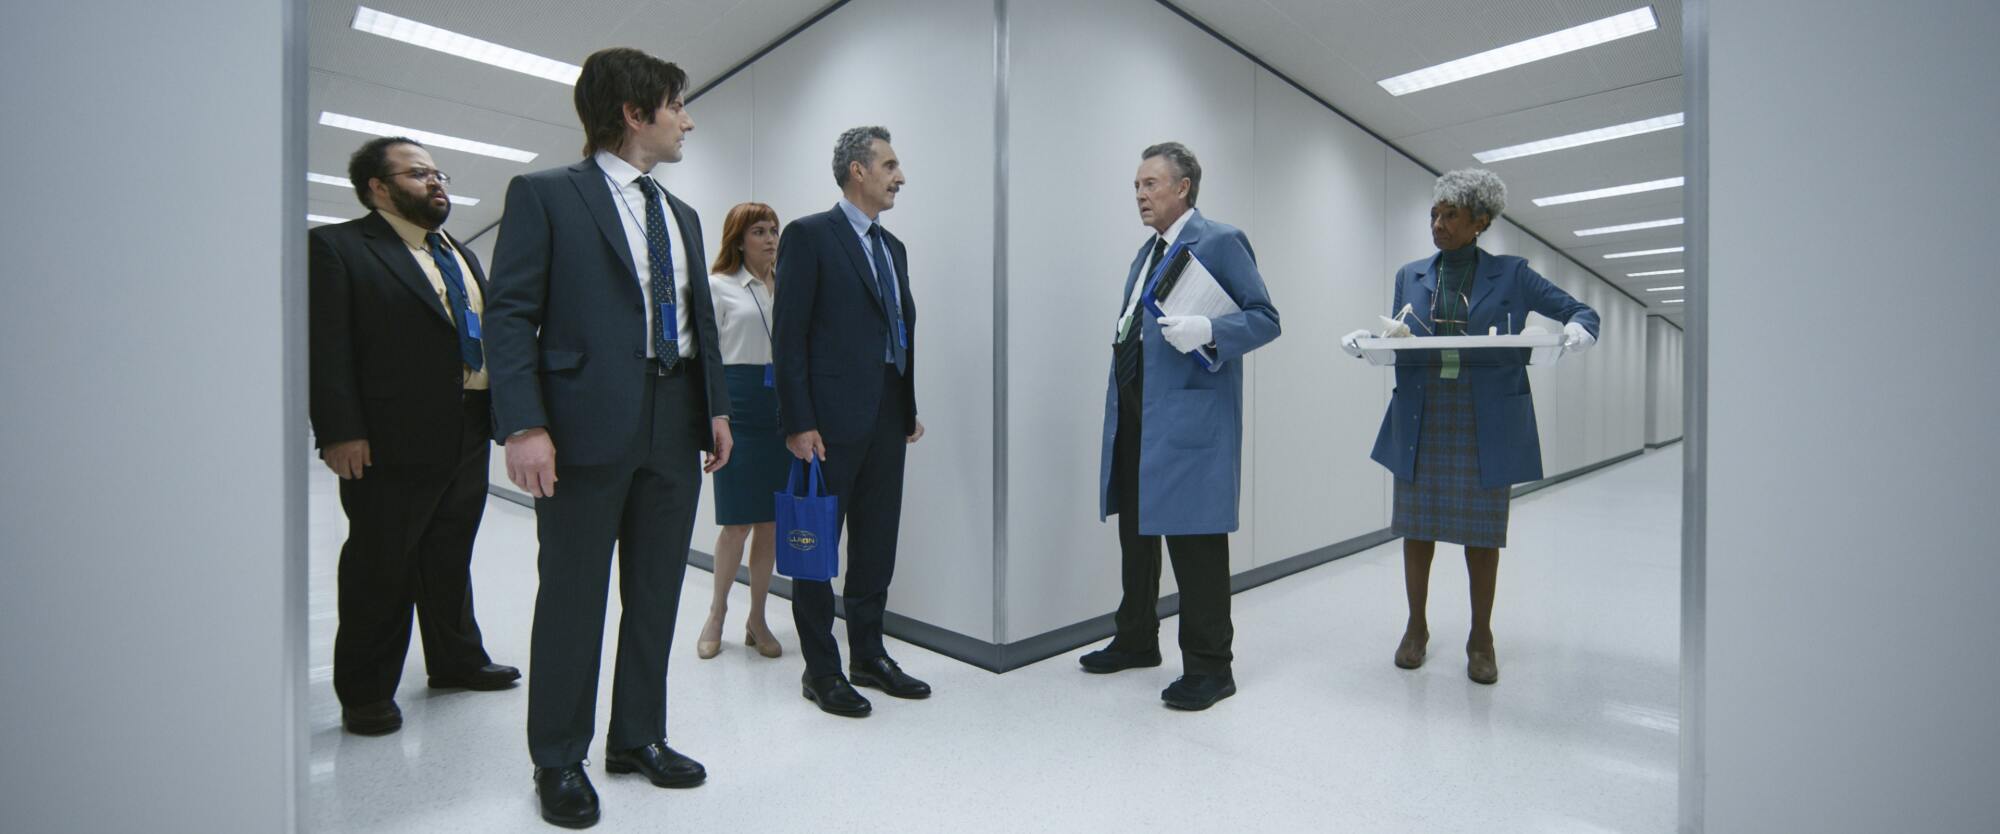 Les stars d'Apple TV+ "Rupture" debout ensemble dans un couloir blanc.